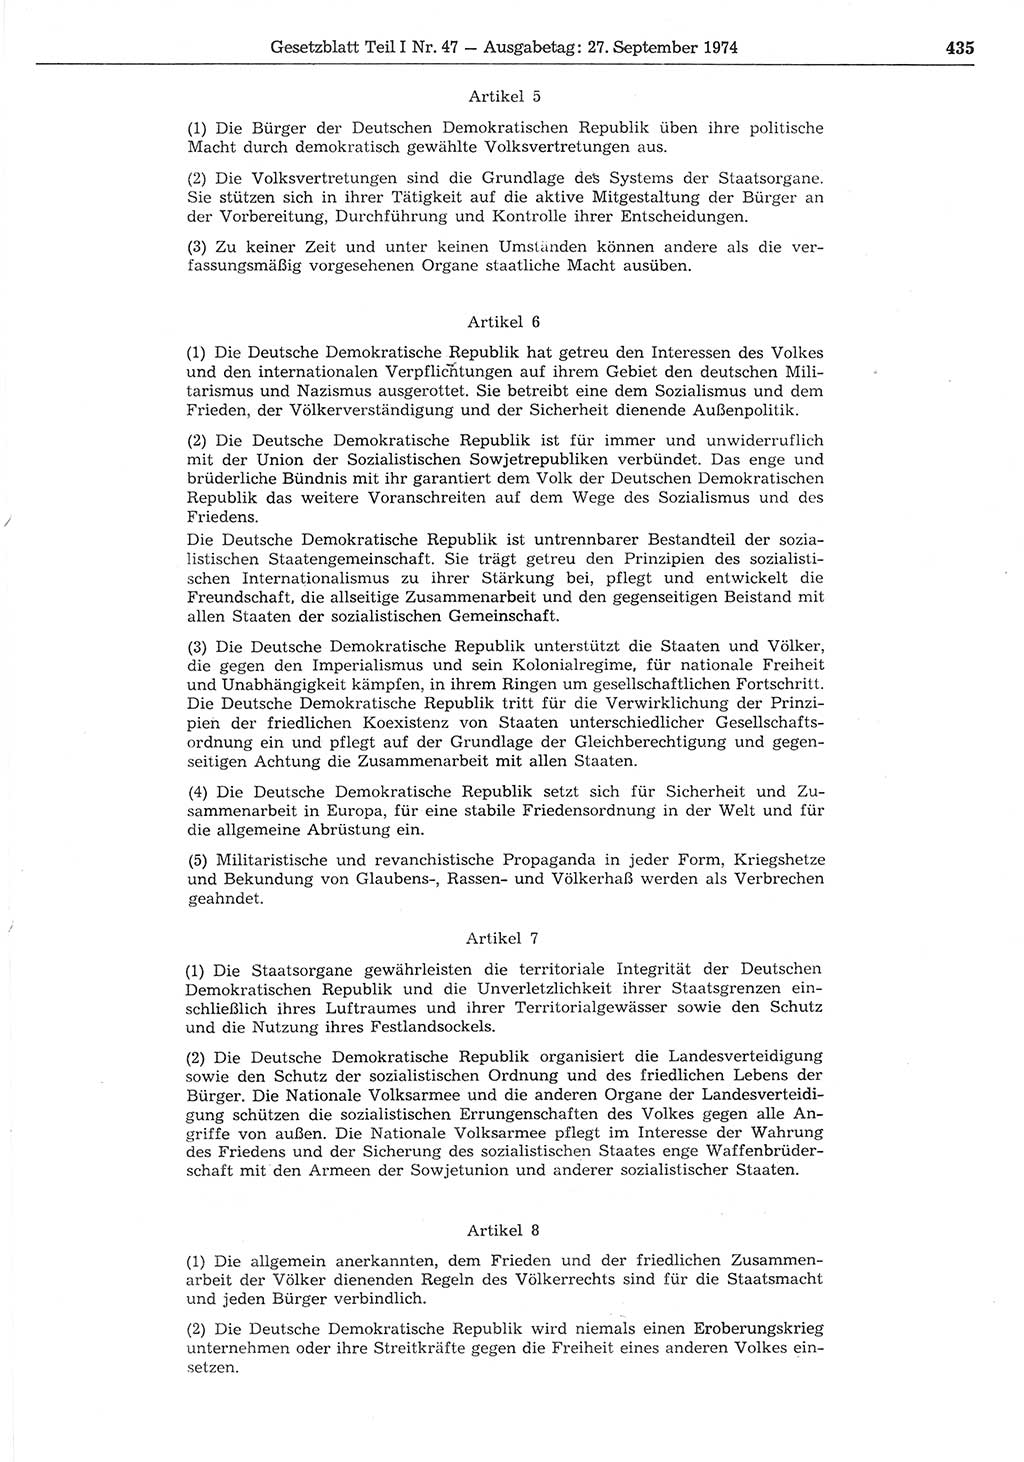 Gesetzblatt (GBl.) der Deutschen Demokratischen Republik (DDR) Teil Ⅰ 1974, Seite 435 (GBl. DDR Ⅰ 1974, S. 435)